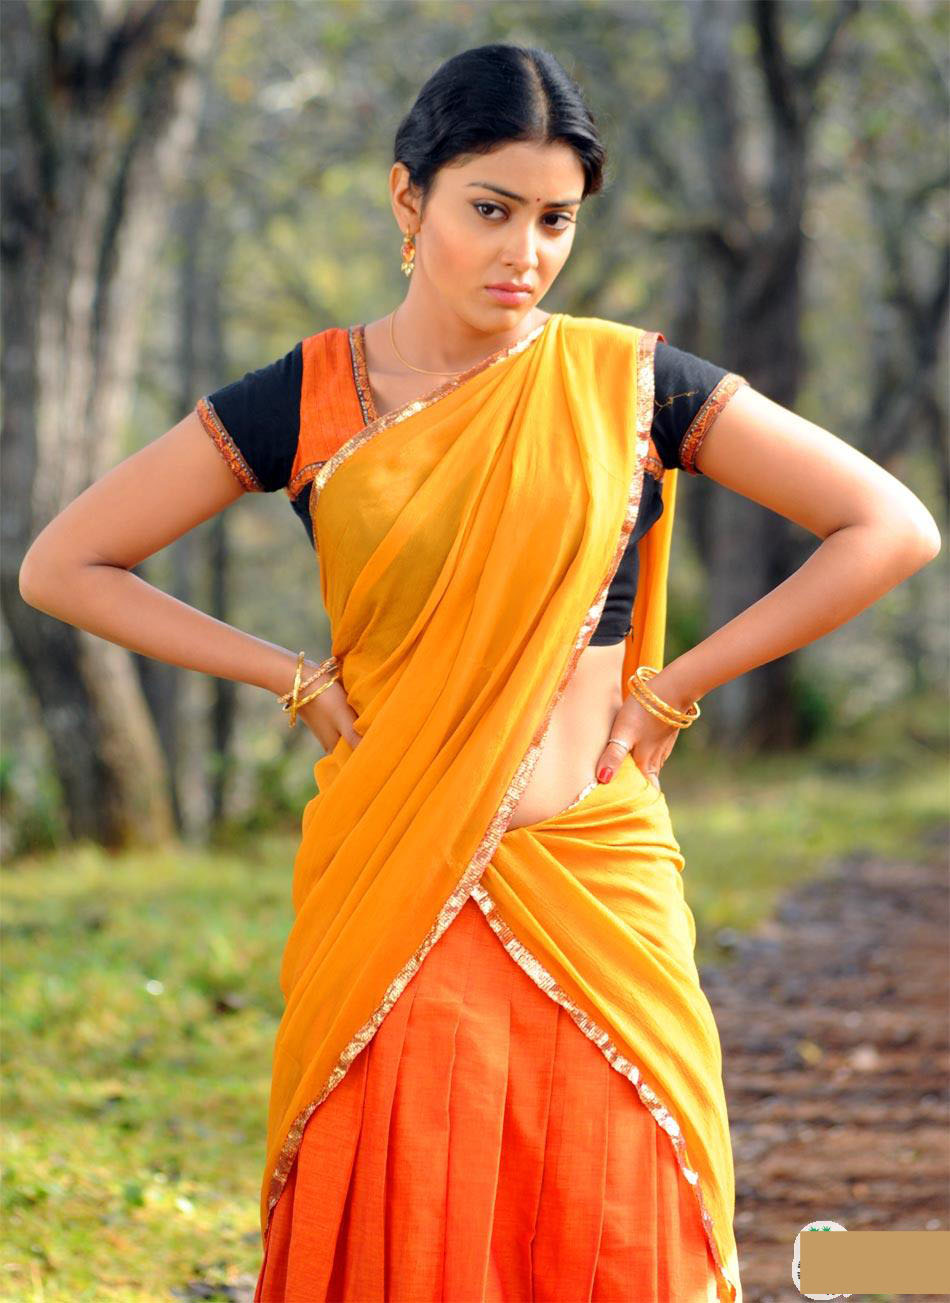 beautiesinsarees: South Indian Actress in Half Saree